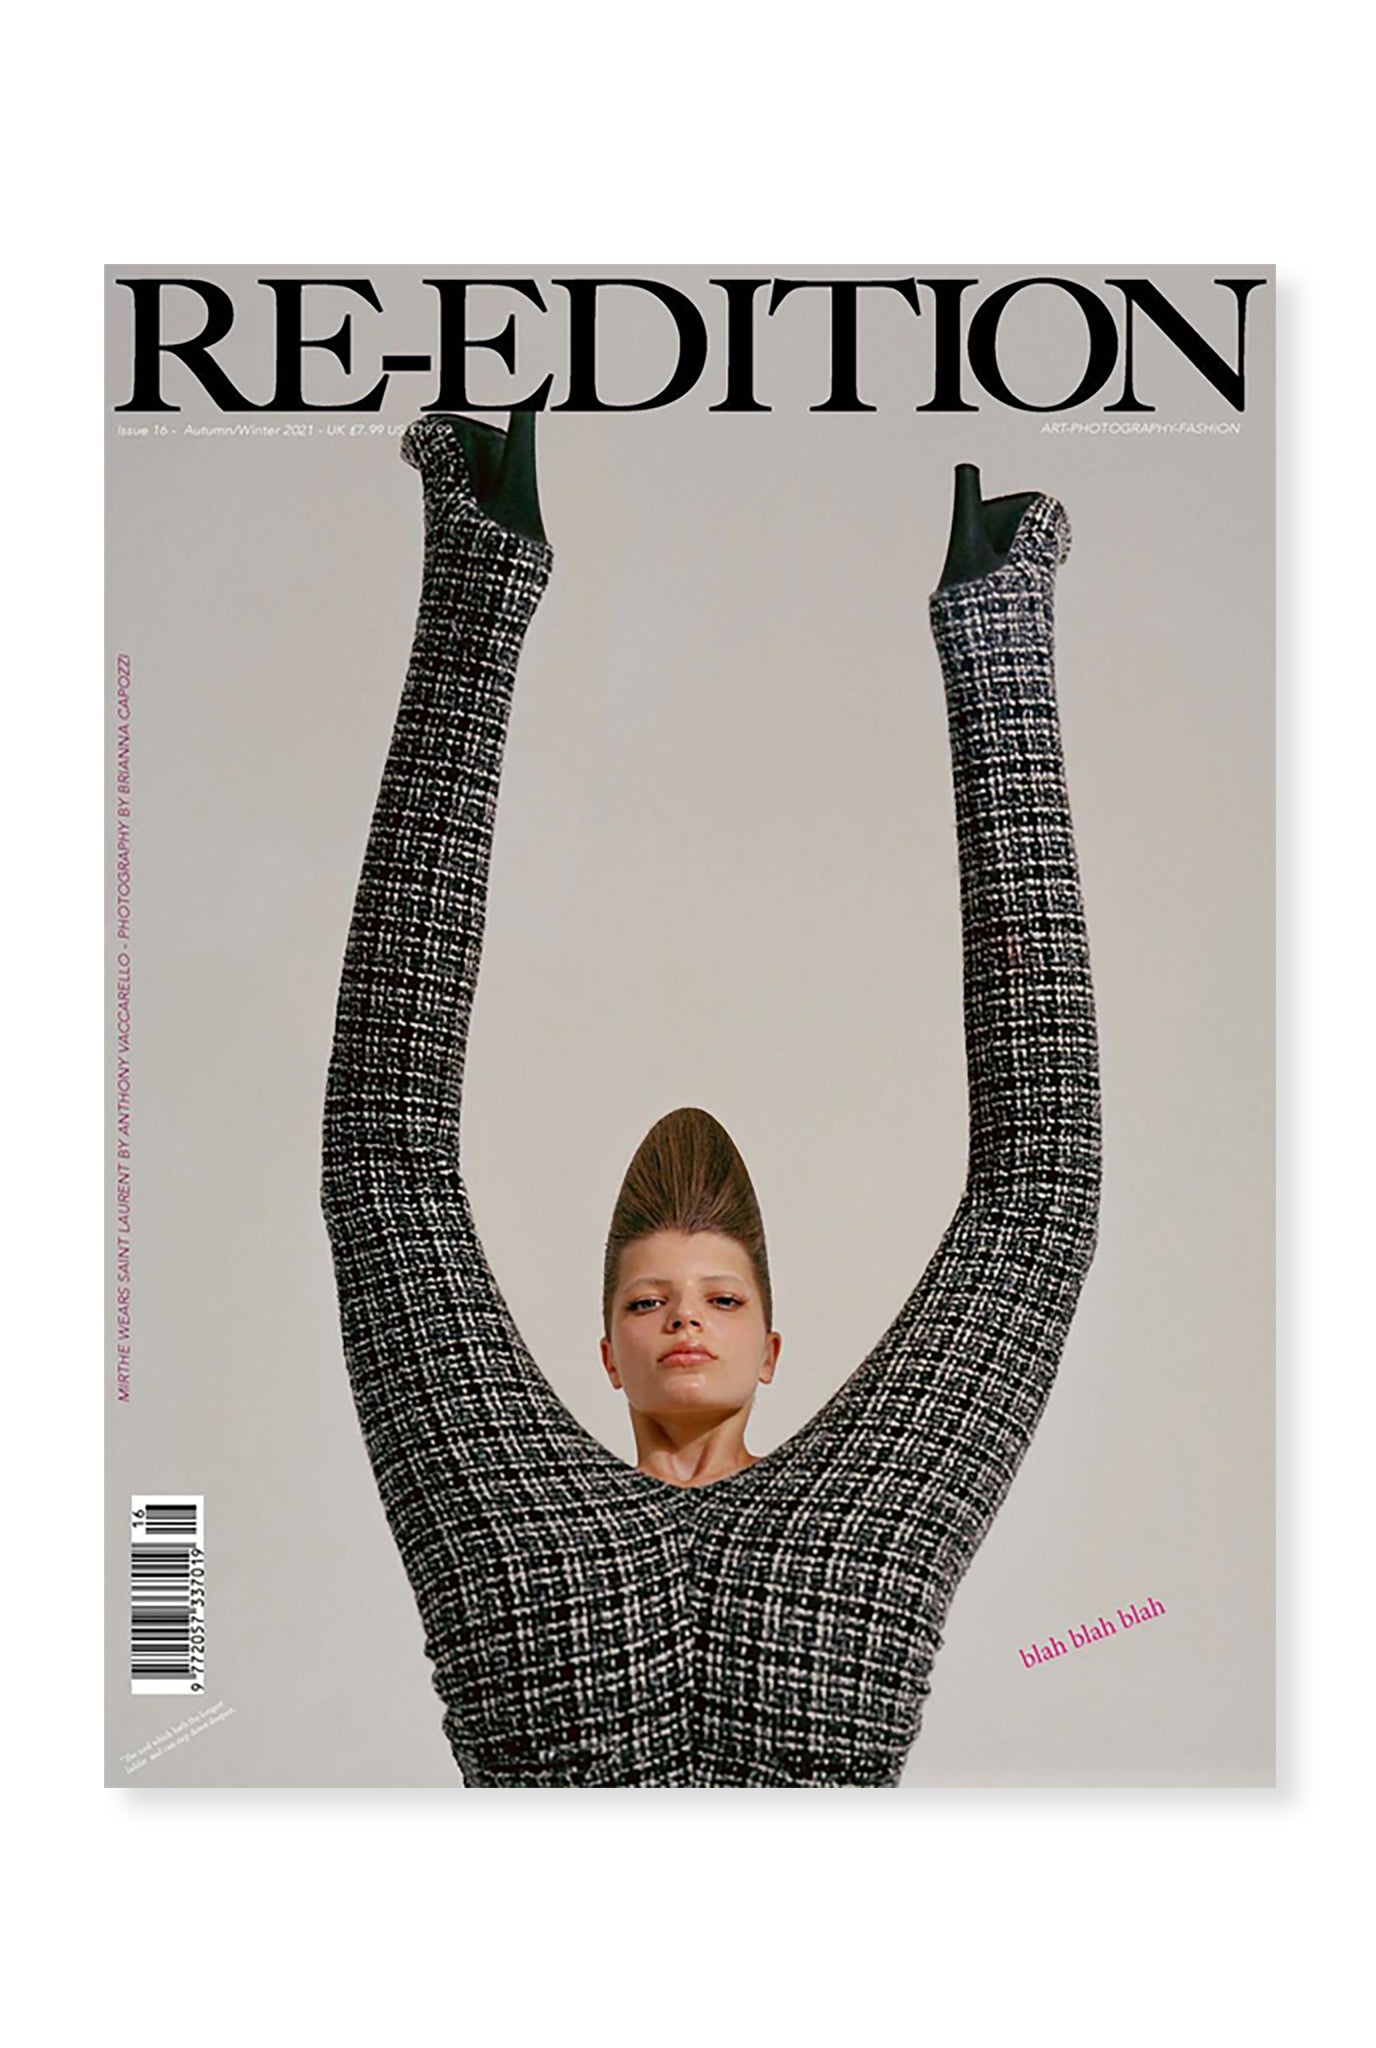 Re-edition 16 - Viviane Sassen - Raphael Hirsch